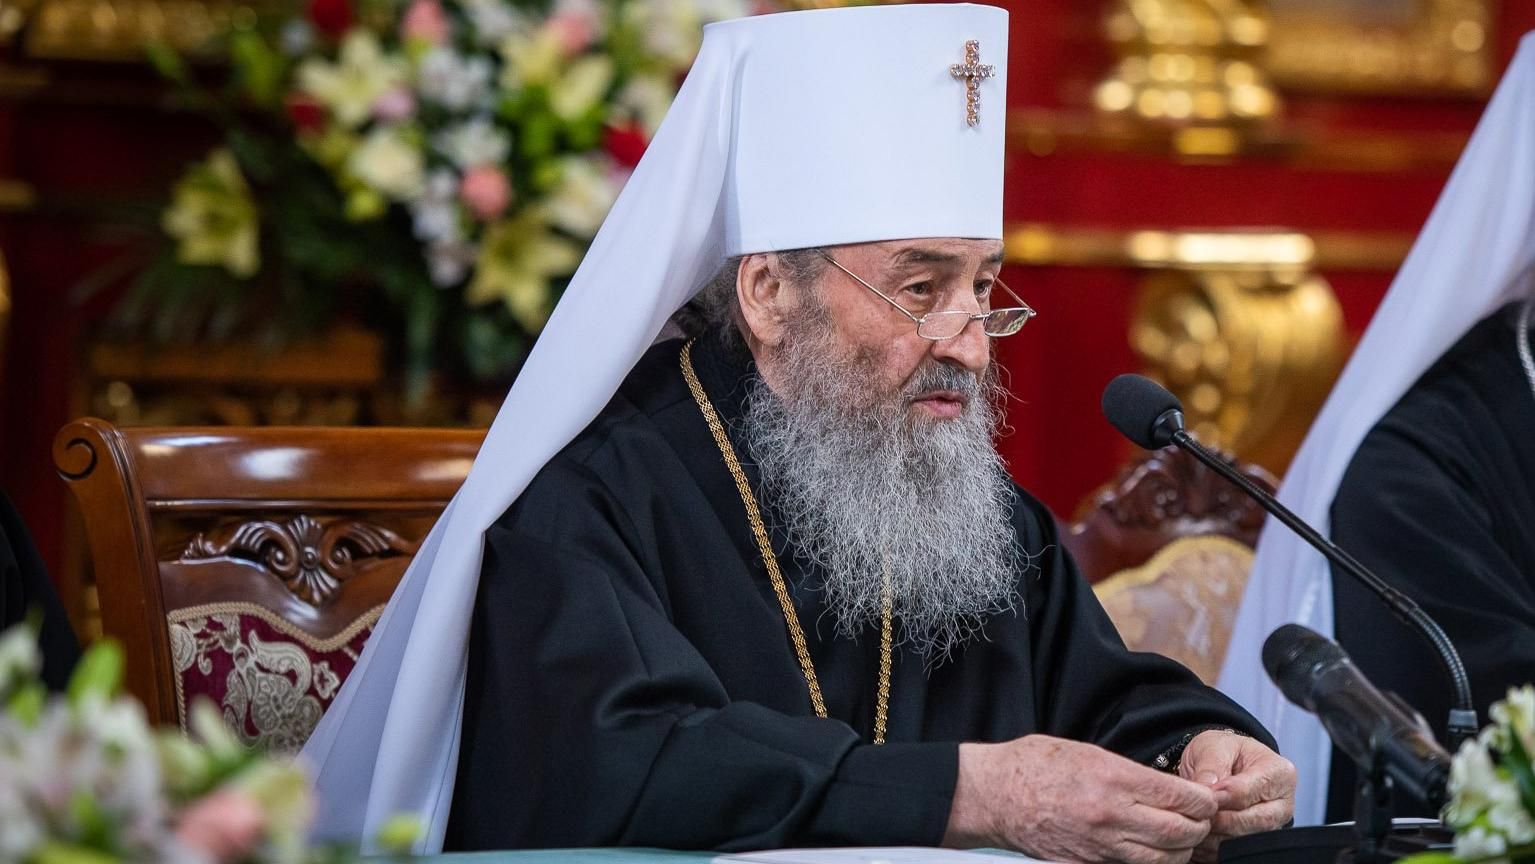 УПЦ МП повністю від'єдналася від Російської православної церкви: рішення собору